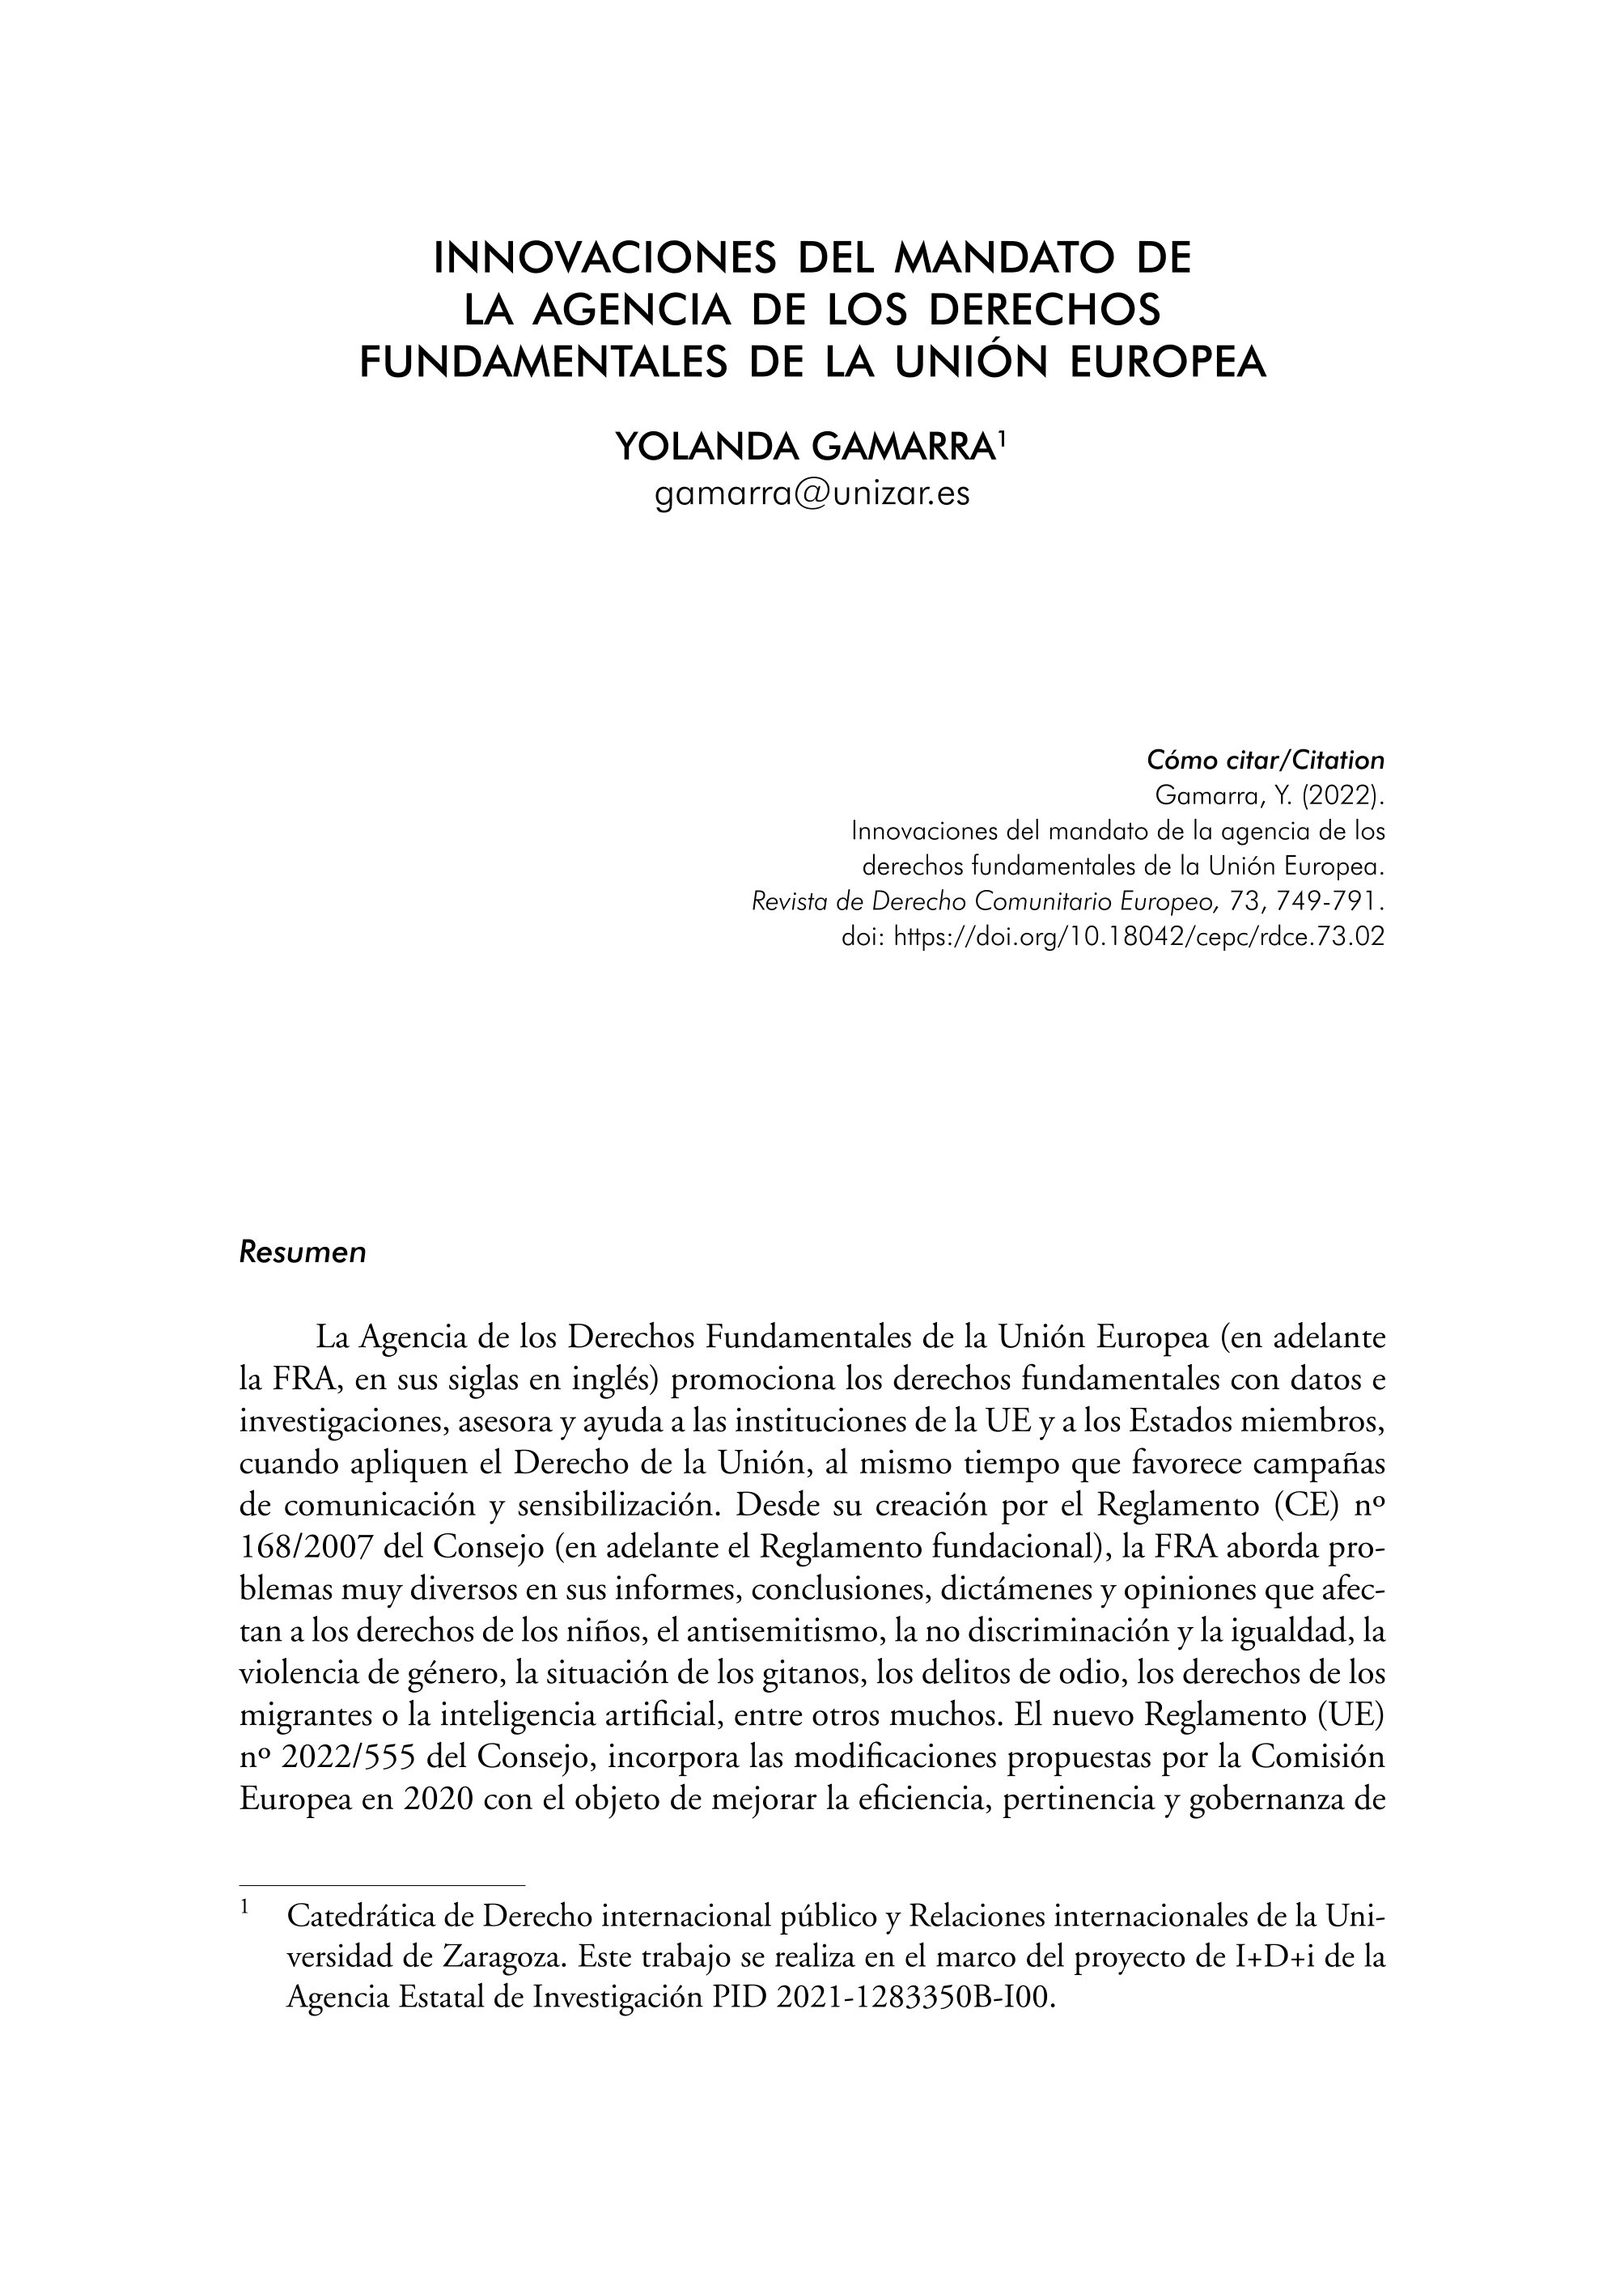 Innovaciones del mandato de la Agencia de los Derechos Fundamentales de la Unión Europea